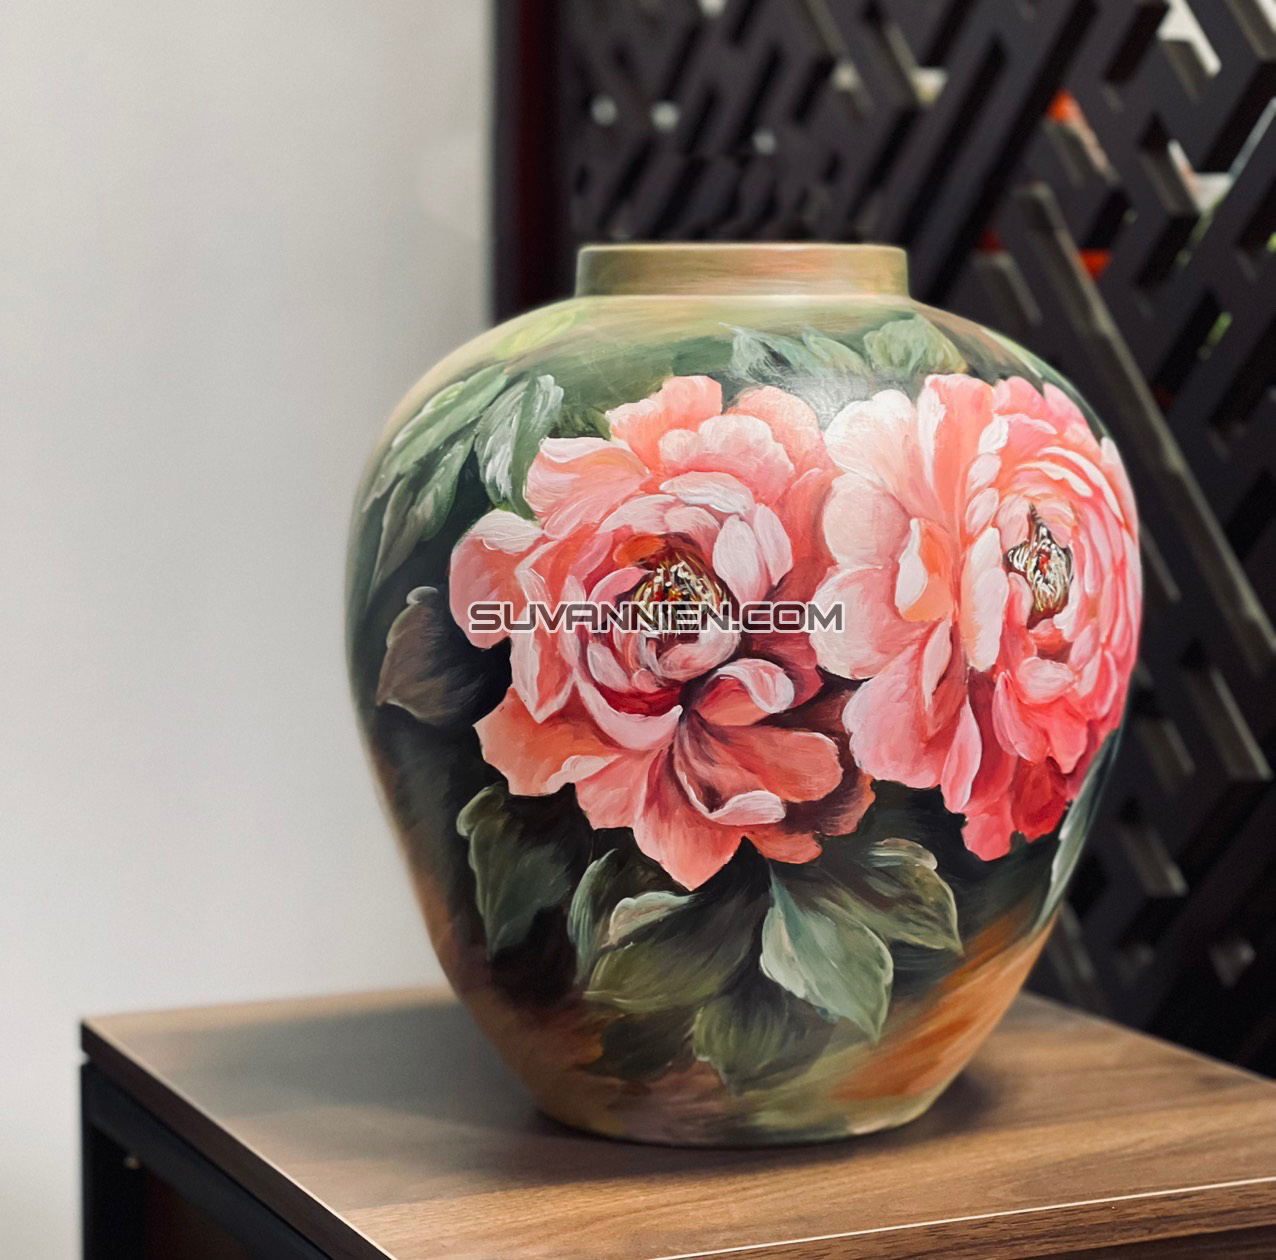 Hãy tìm hiểu về nghệ thuật vẽ hoa 3D và xem những bức tranh tuyệt đẹp được tạo nên từ chính bàn tay tài hoa của người nghệ sĩ. Mỗi chi tiết của hoa được vẽ tinh xảo, hình dáng và màu sắc đều rất chân thật và đẹp mắt.